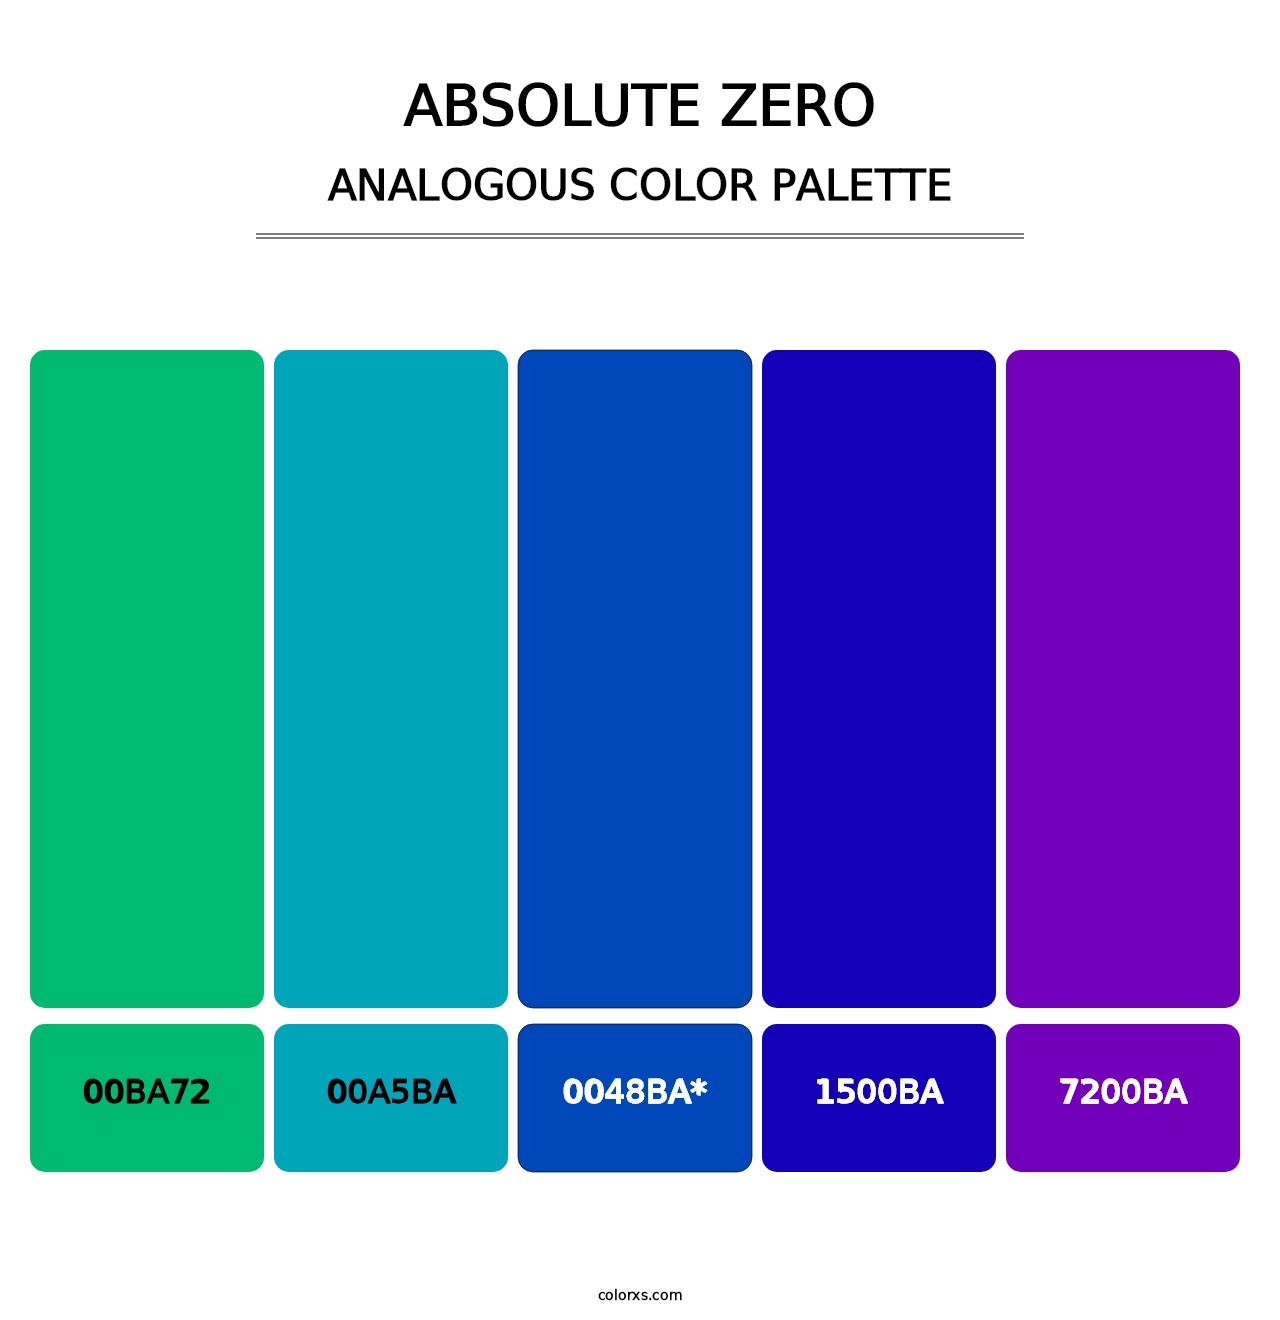 Absolute Zero - Analogous Color Palette